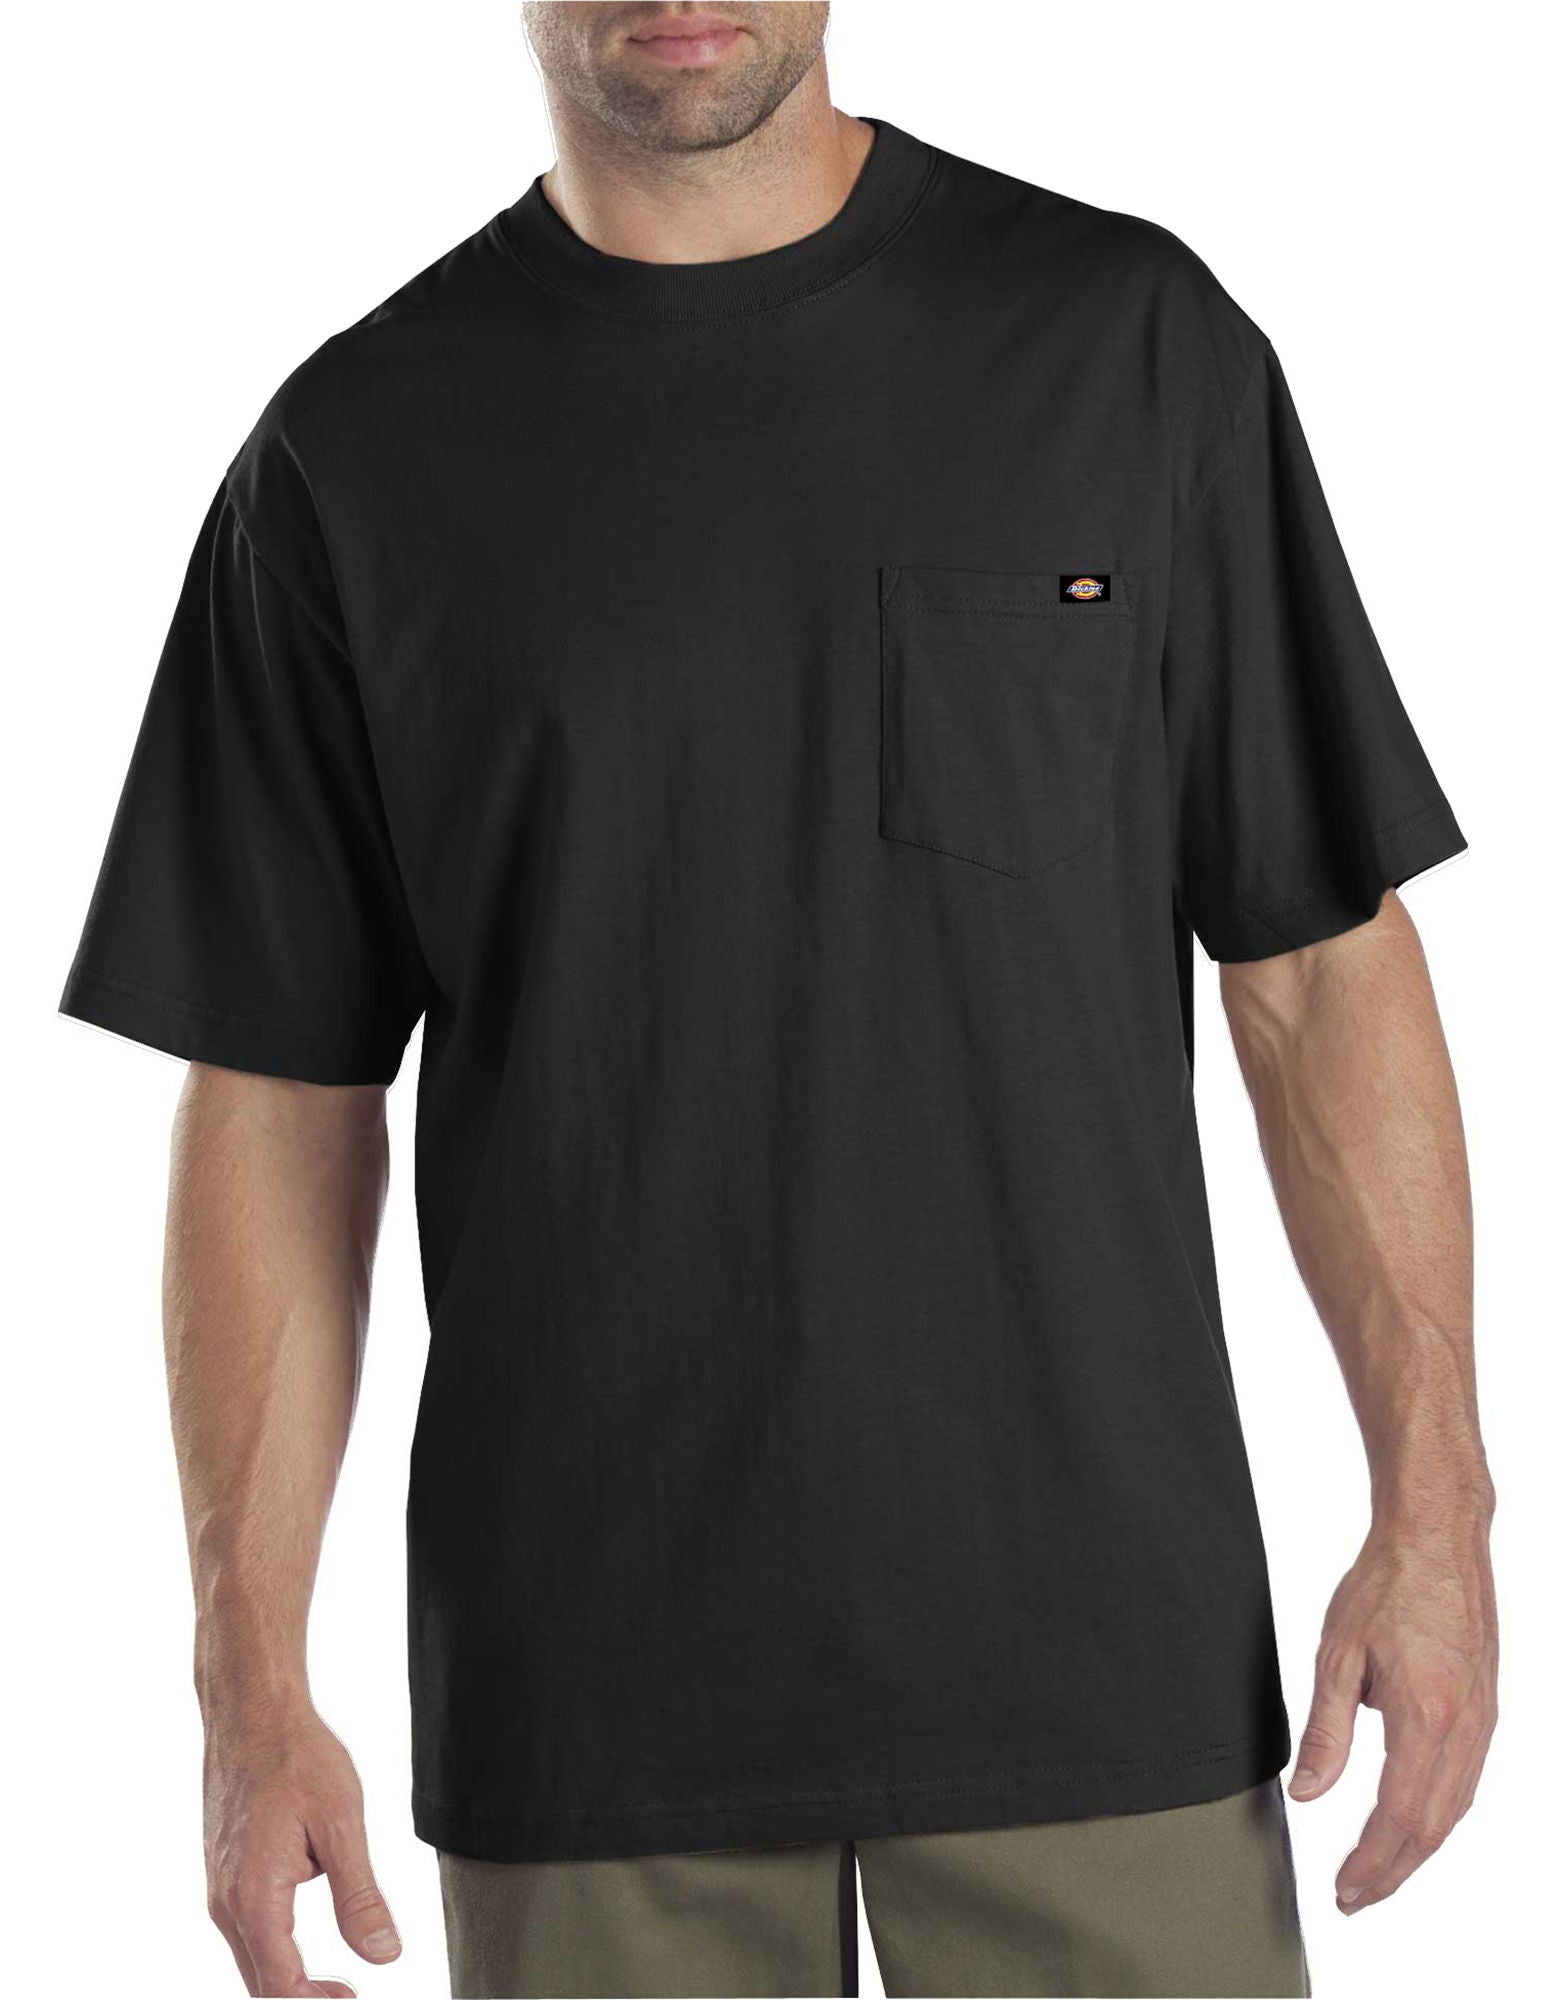 DIC-1144624 - Dickies Mens 2-Pack Pocket T-Shirts